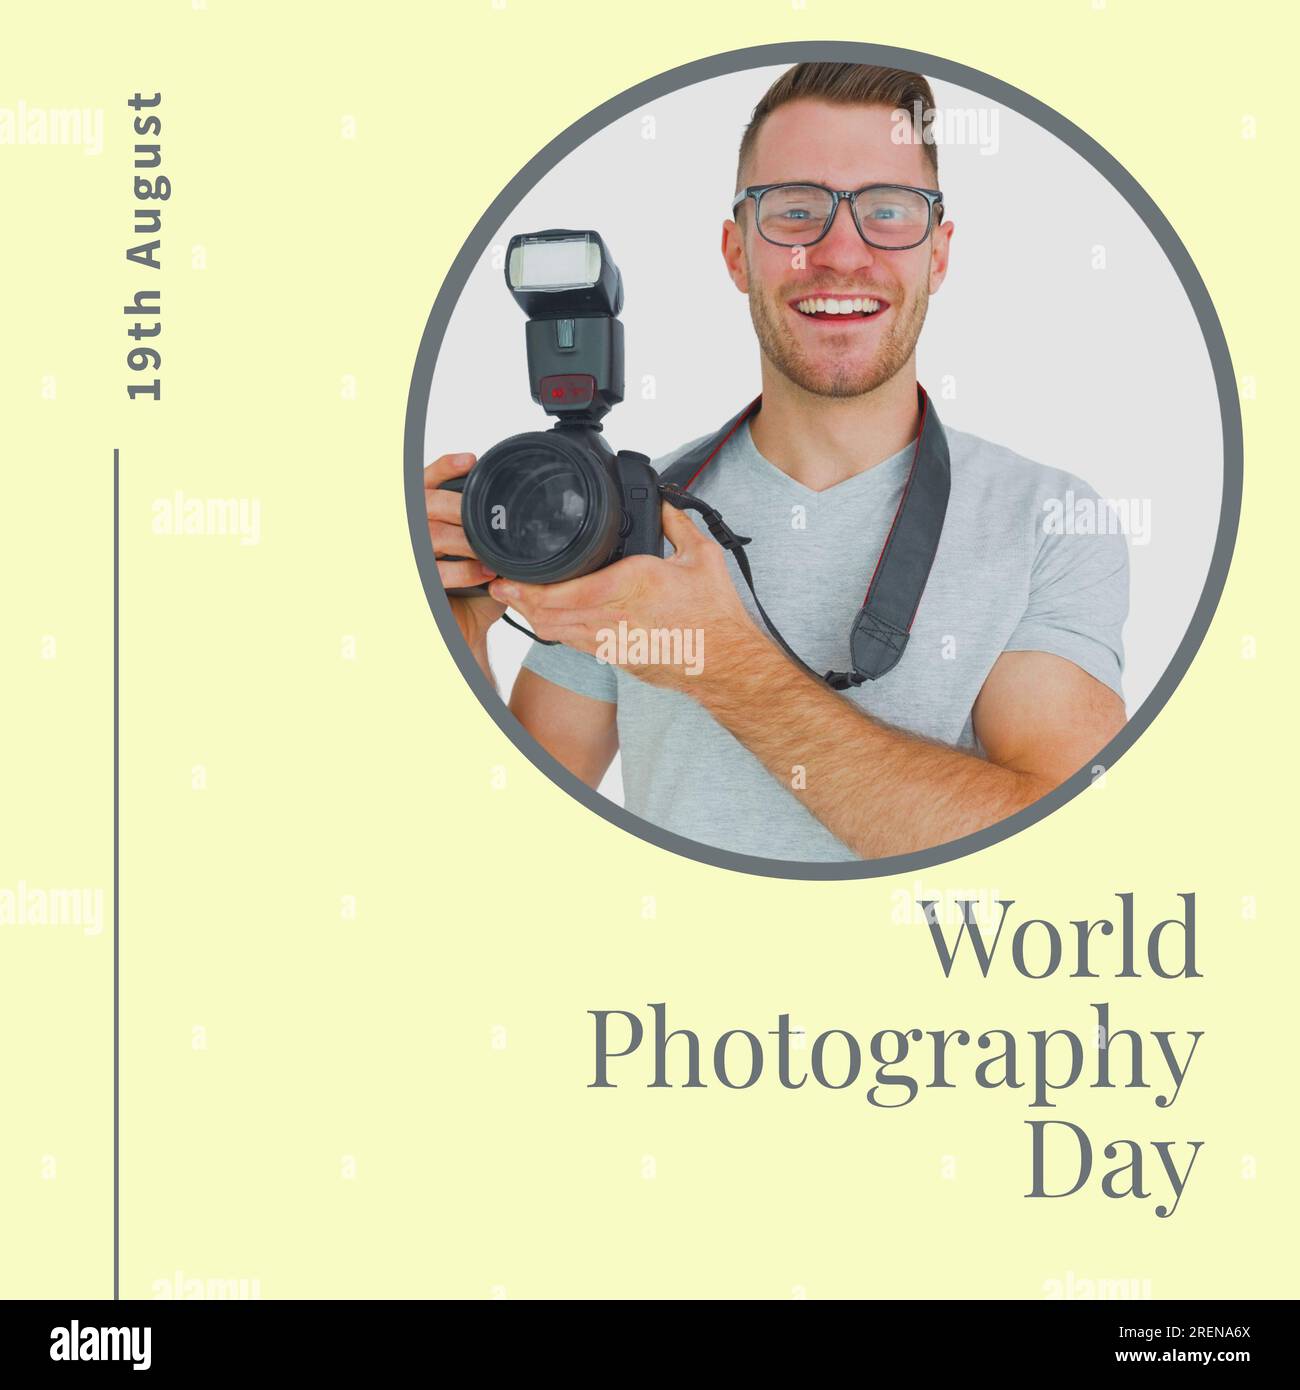 Texte de la journée mondiale de la photographie et date sur jaune avec homme caucasien heureux tenant l'appareil photo avec flash Banque D'Images